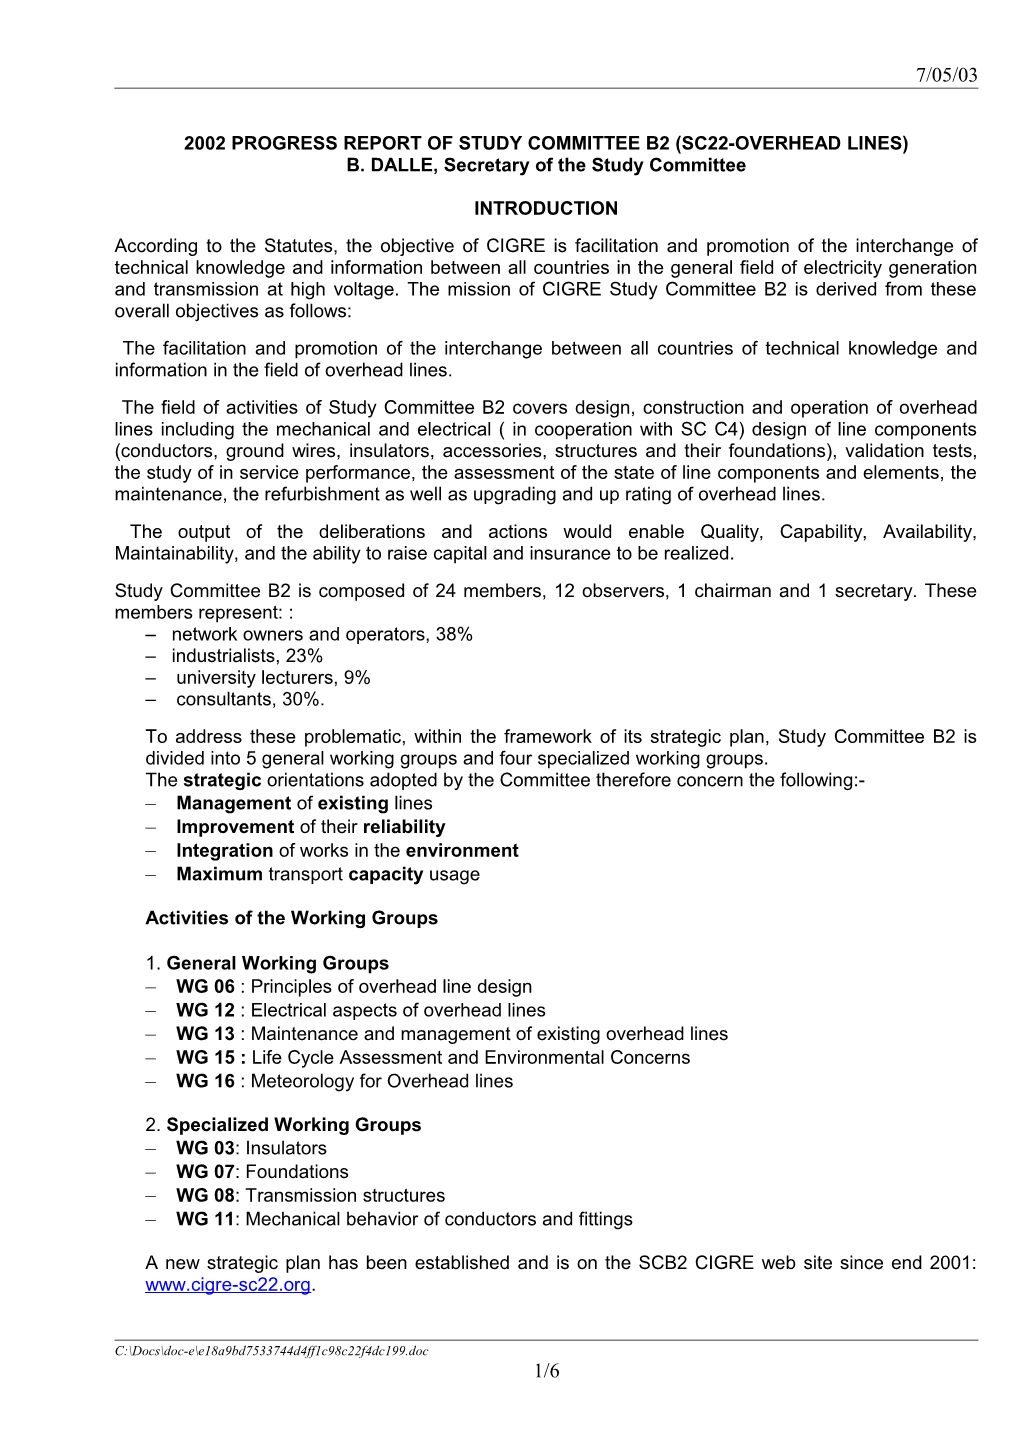 2002 Progress Report of Study Committee B2 (Sc22-Overhead Lines)